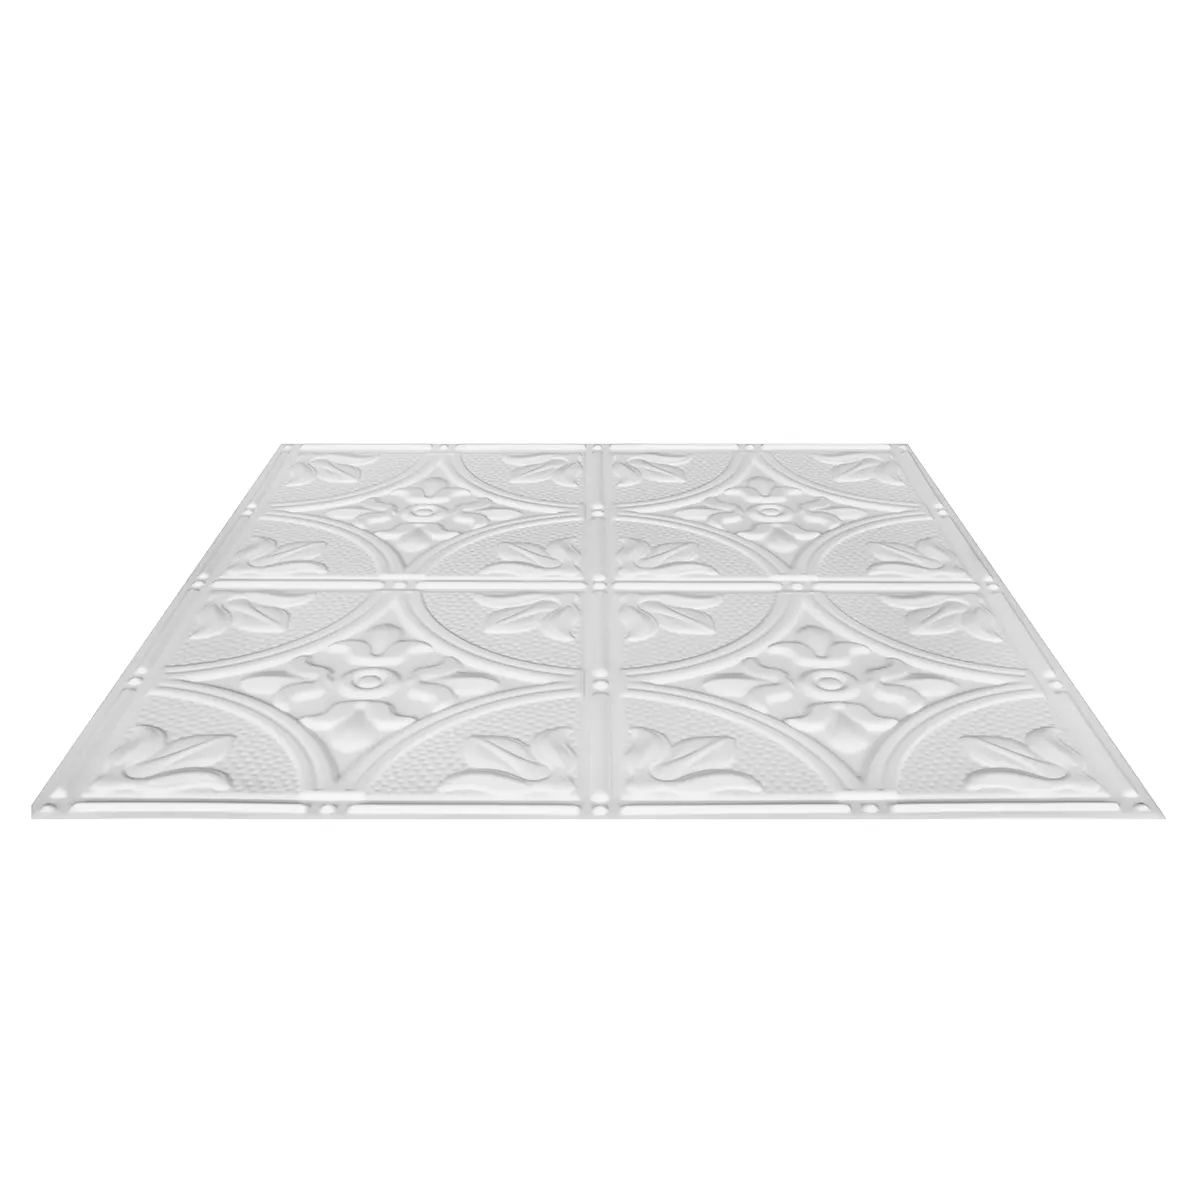 PVC Plafond carreaux 2021 Nouveau prix de conception de revêtement faux conception panneau De Haute Qualité Carreaux DE Plafond En PVC pour chambre salle de bain mur